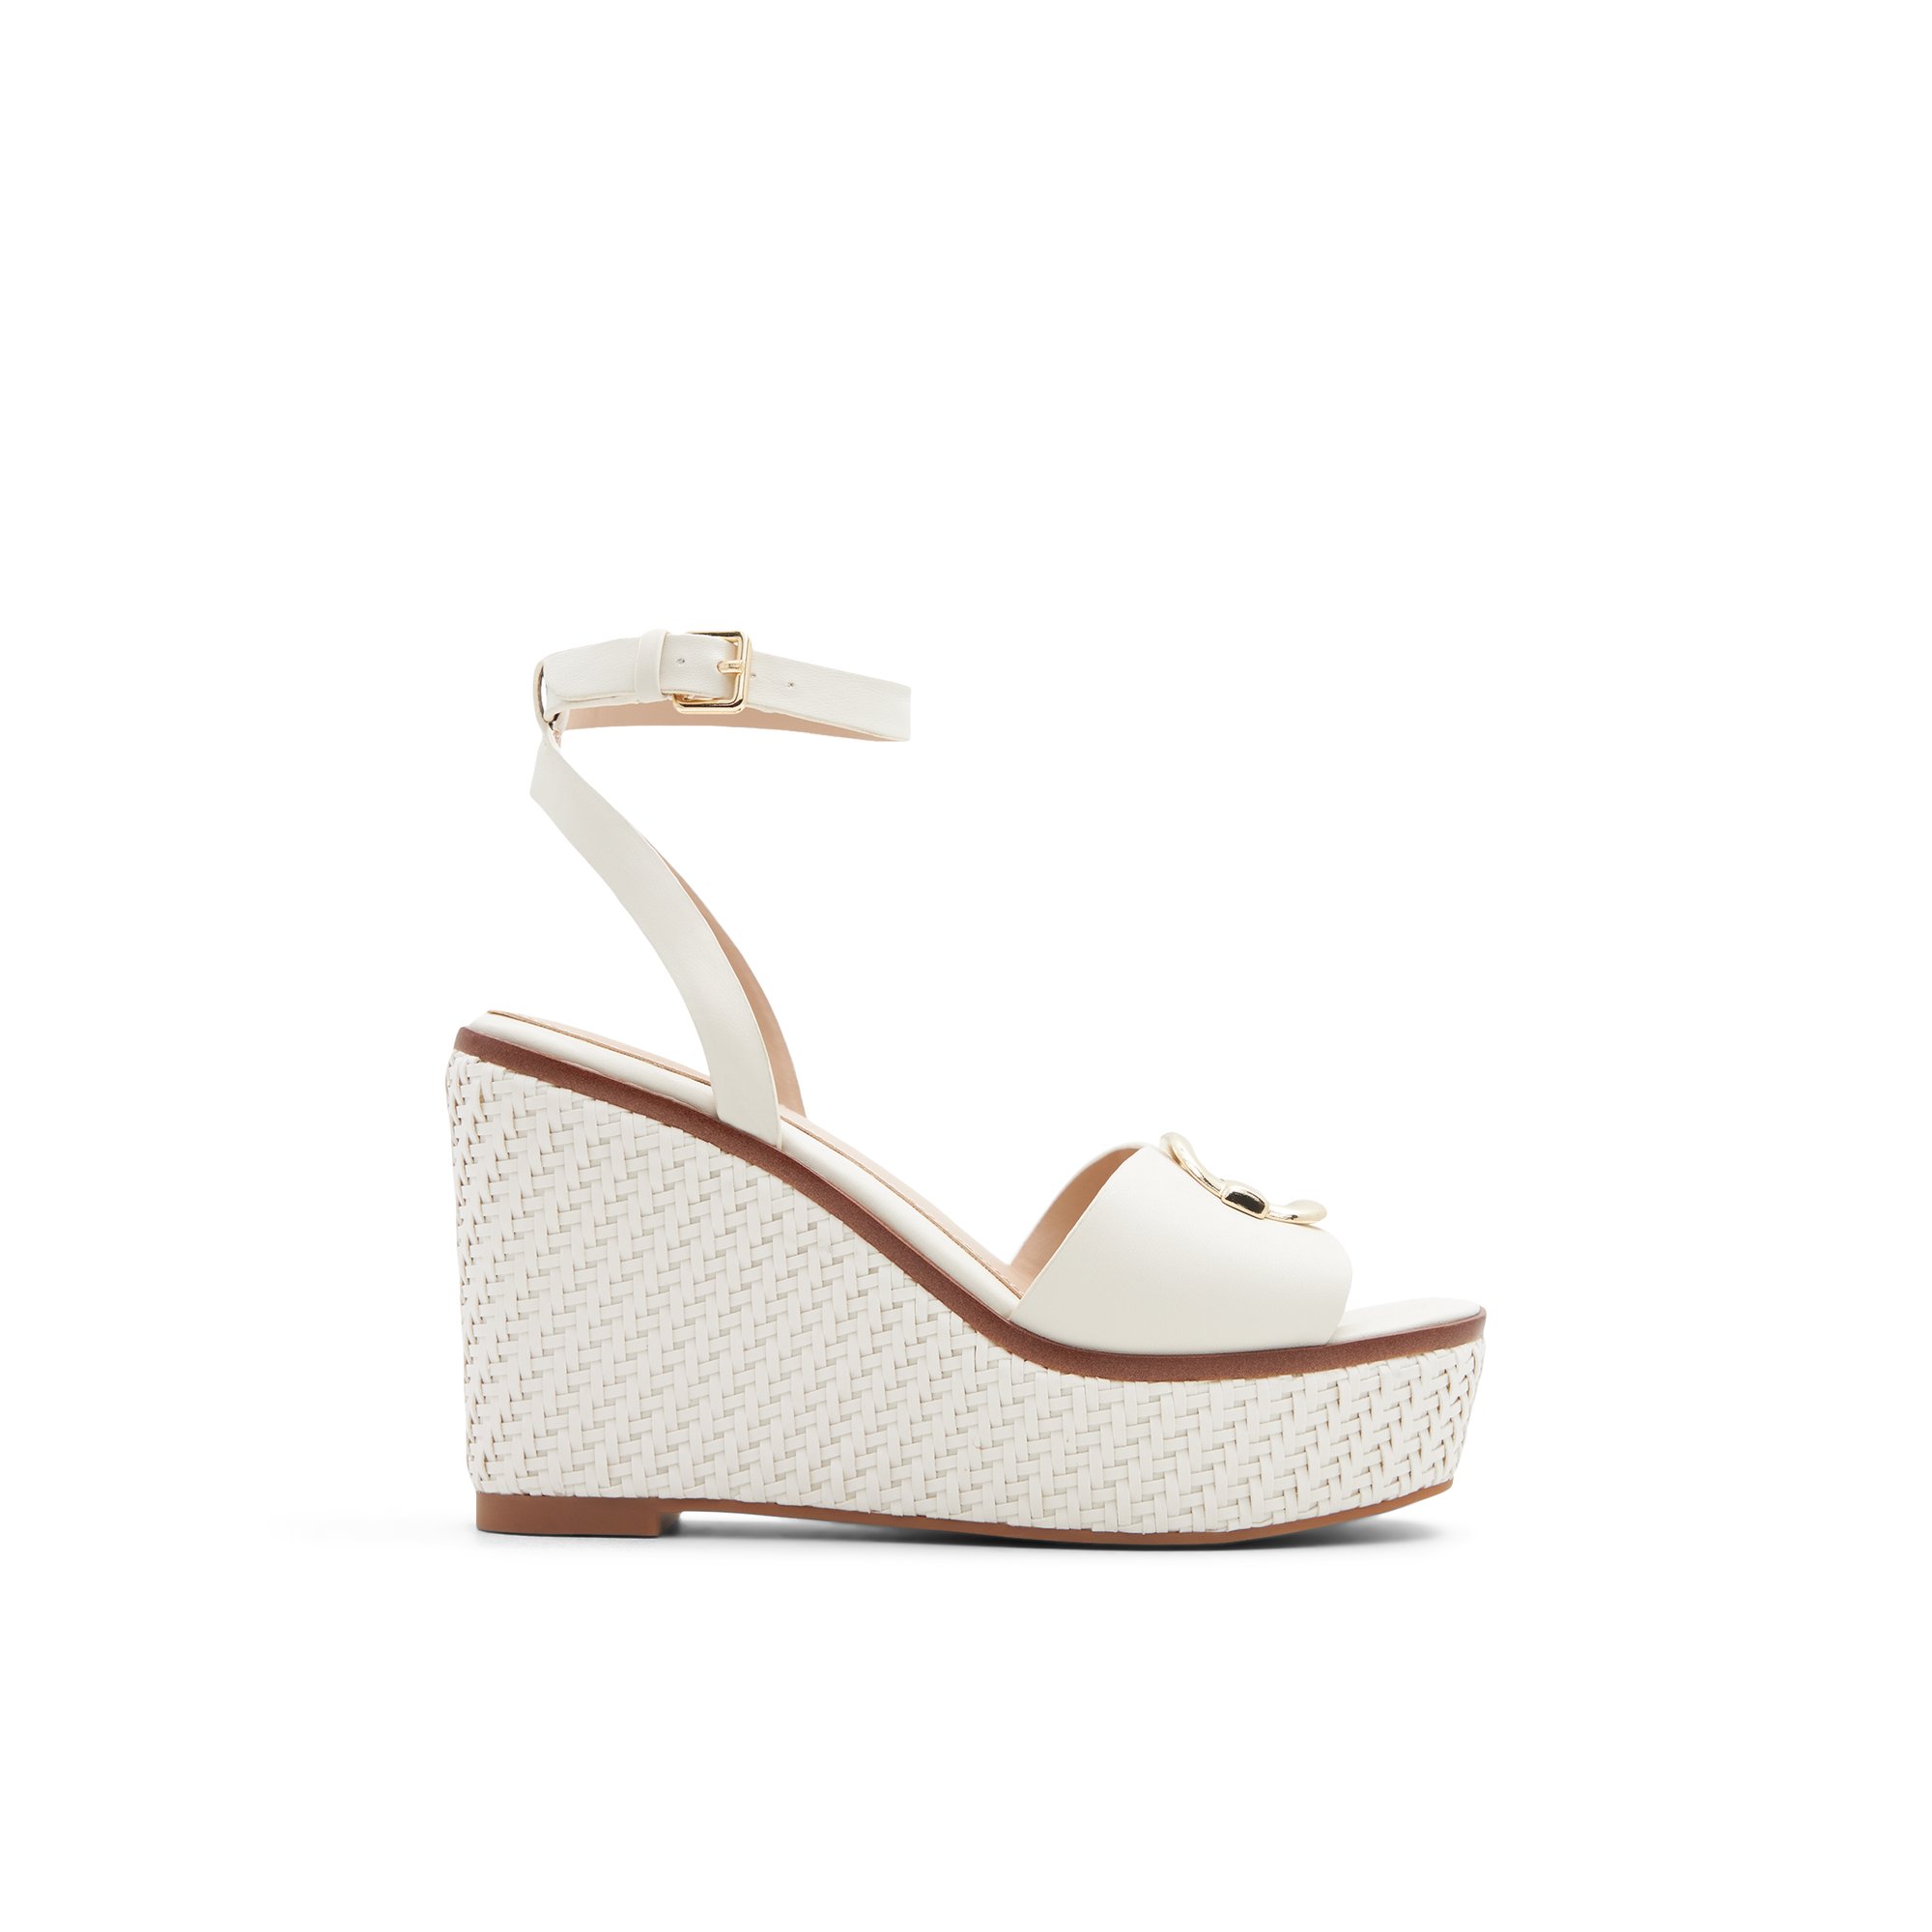 ALDO Carrabriria - Women's Sandals Wedges - White